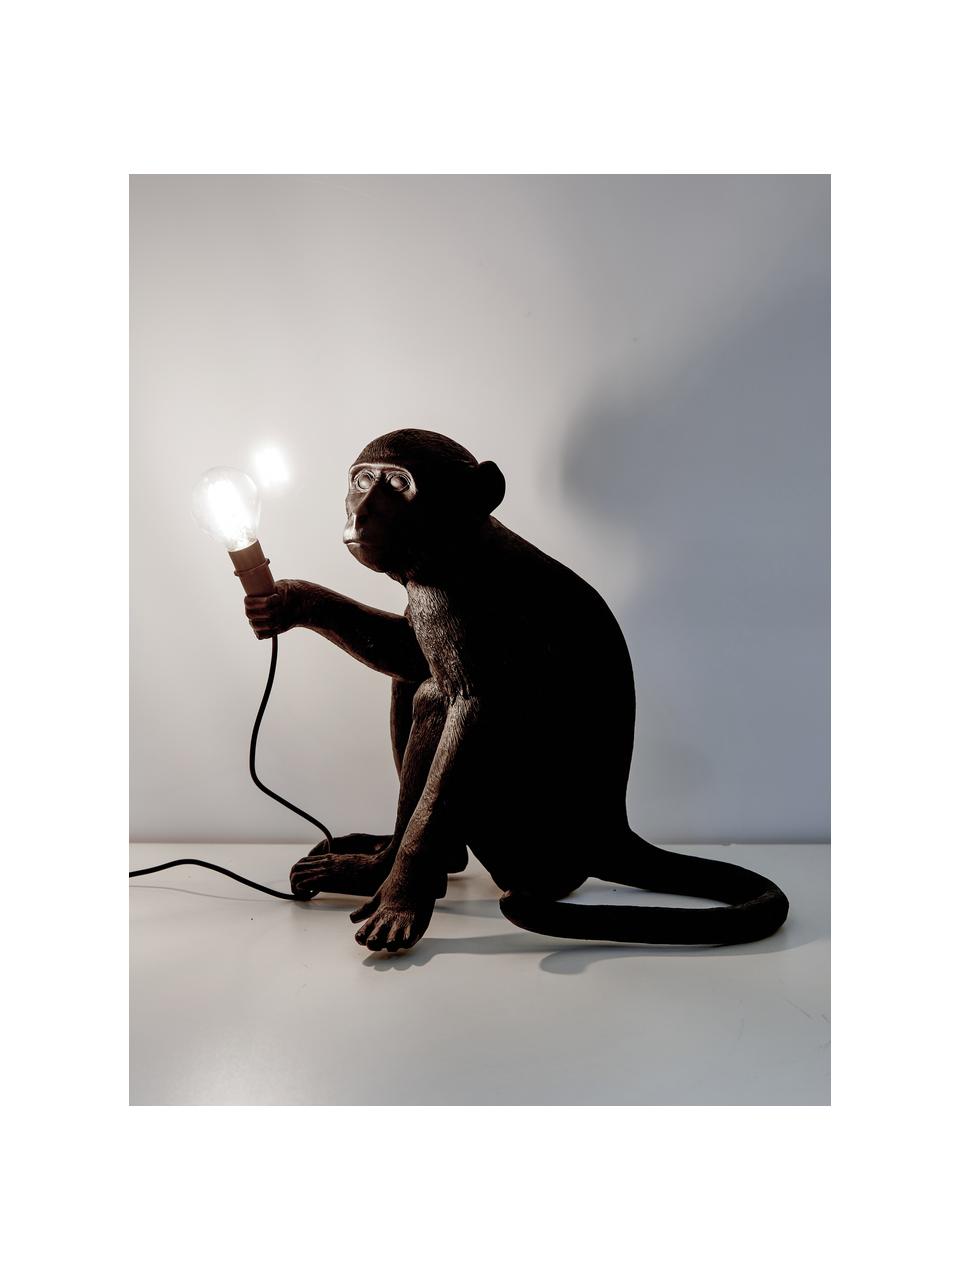 Design Außentischlampe Monkey mit Stecker, Leuchte: Kunstharz, Schwarz, B 34 x H 32 cm